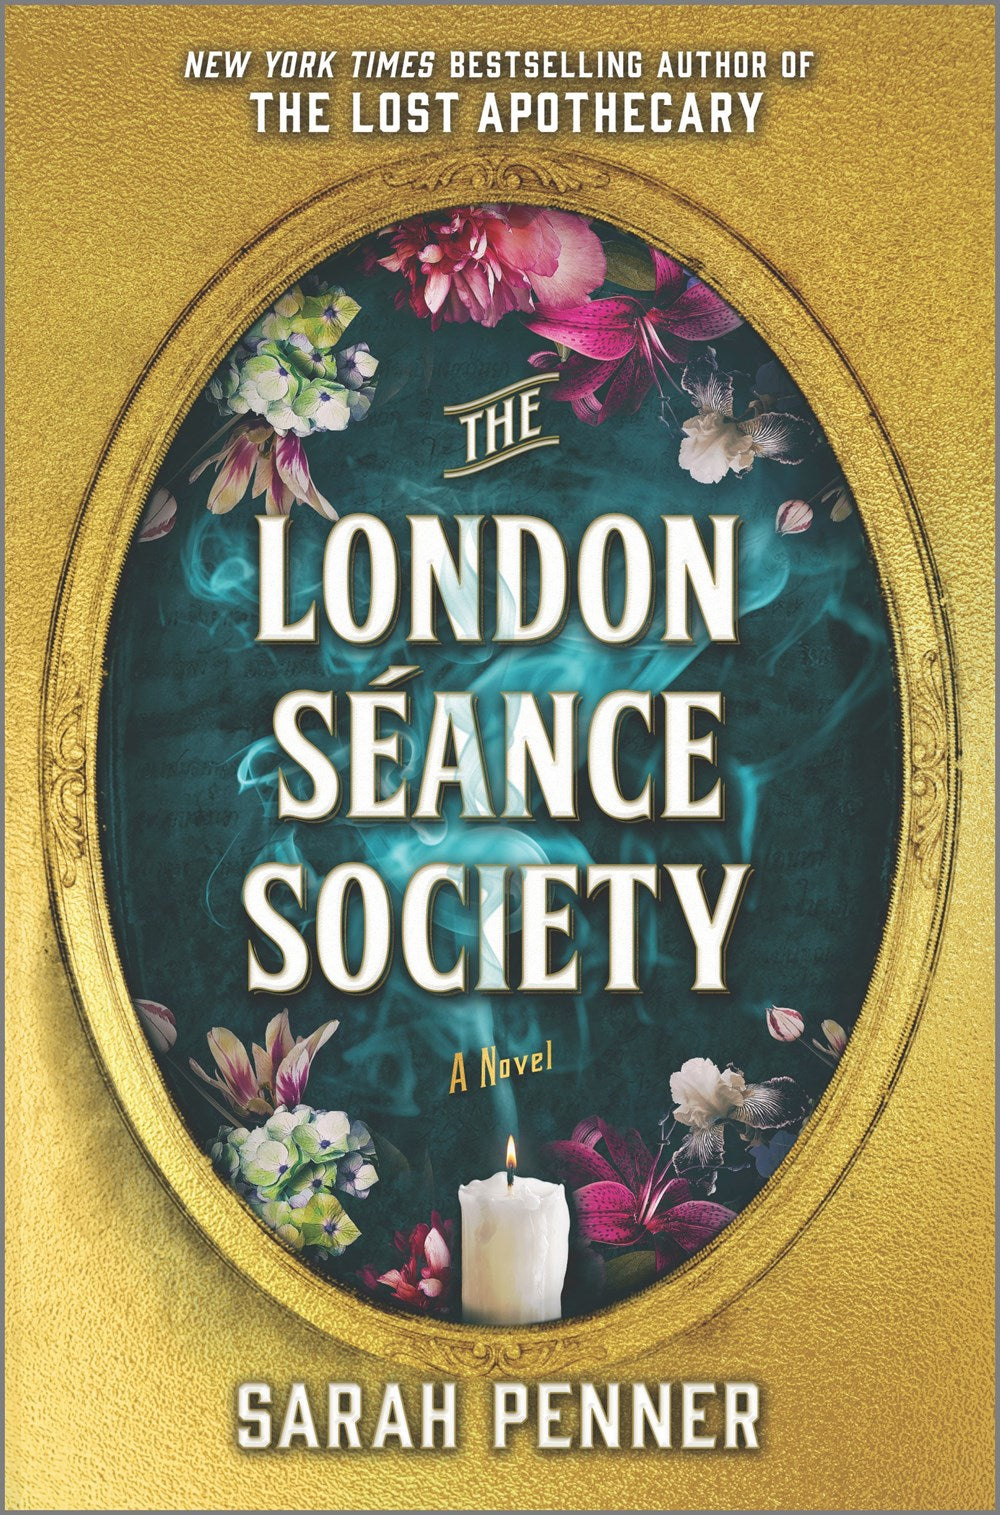 The London Séance Society : A Novel